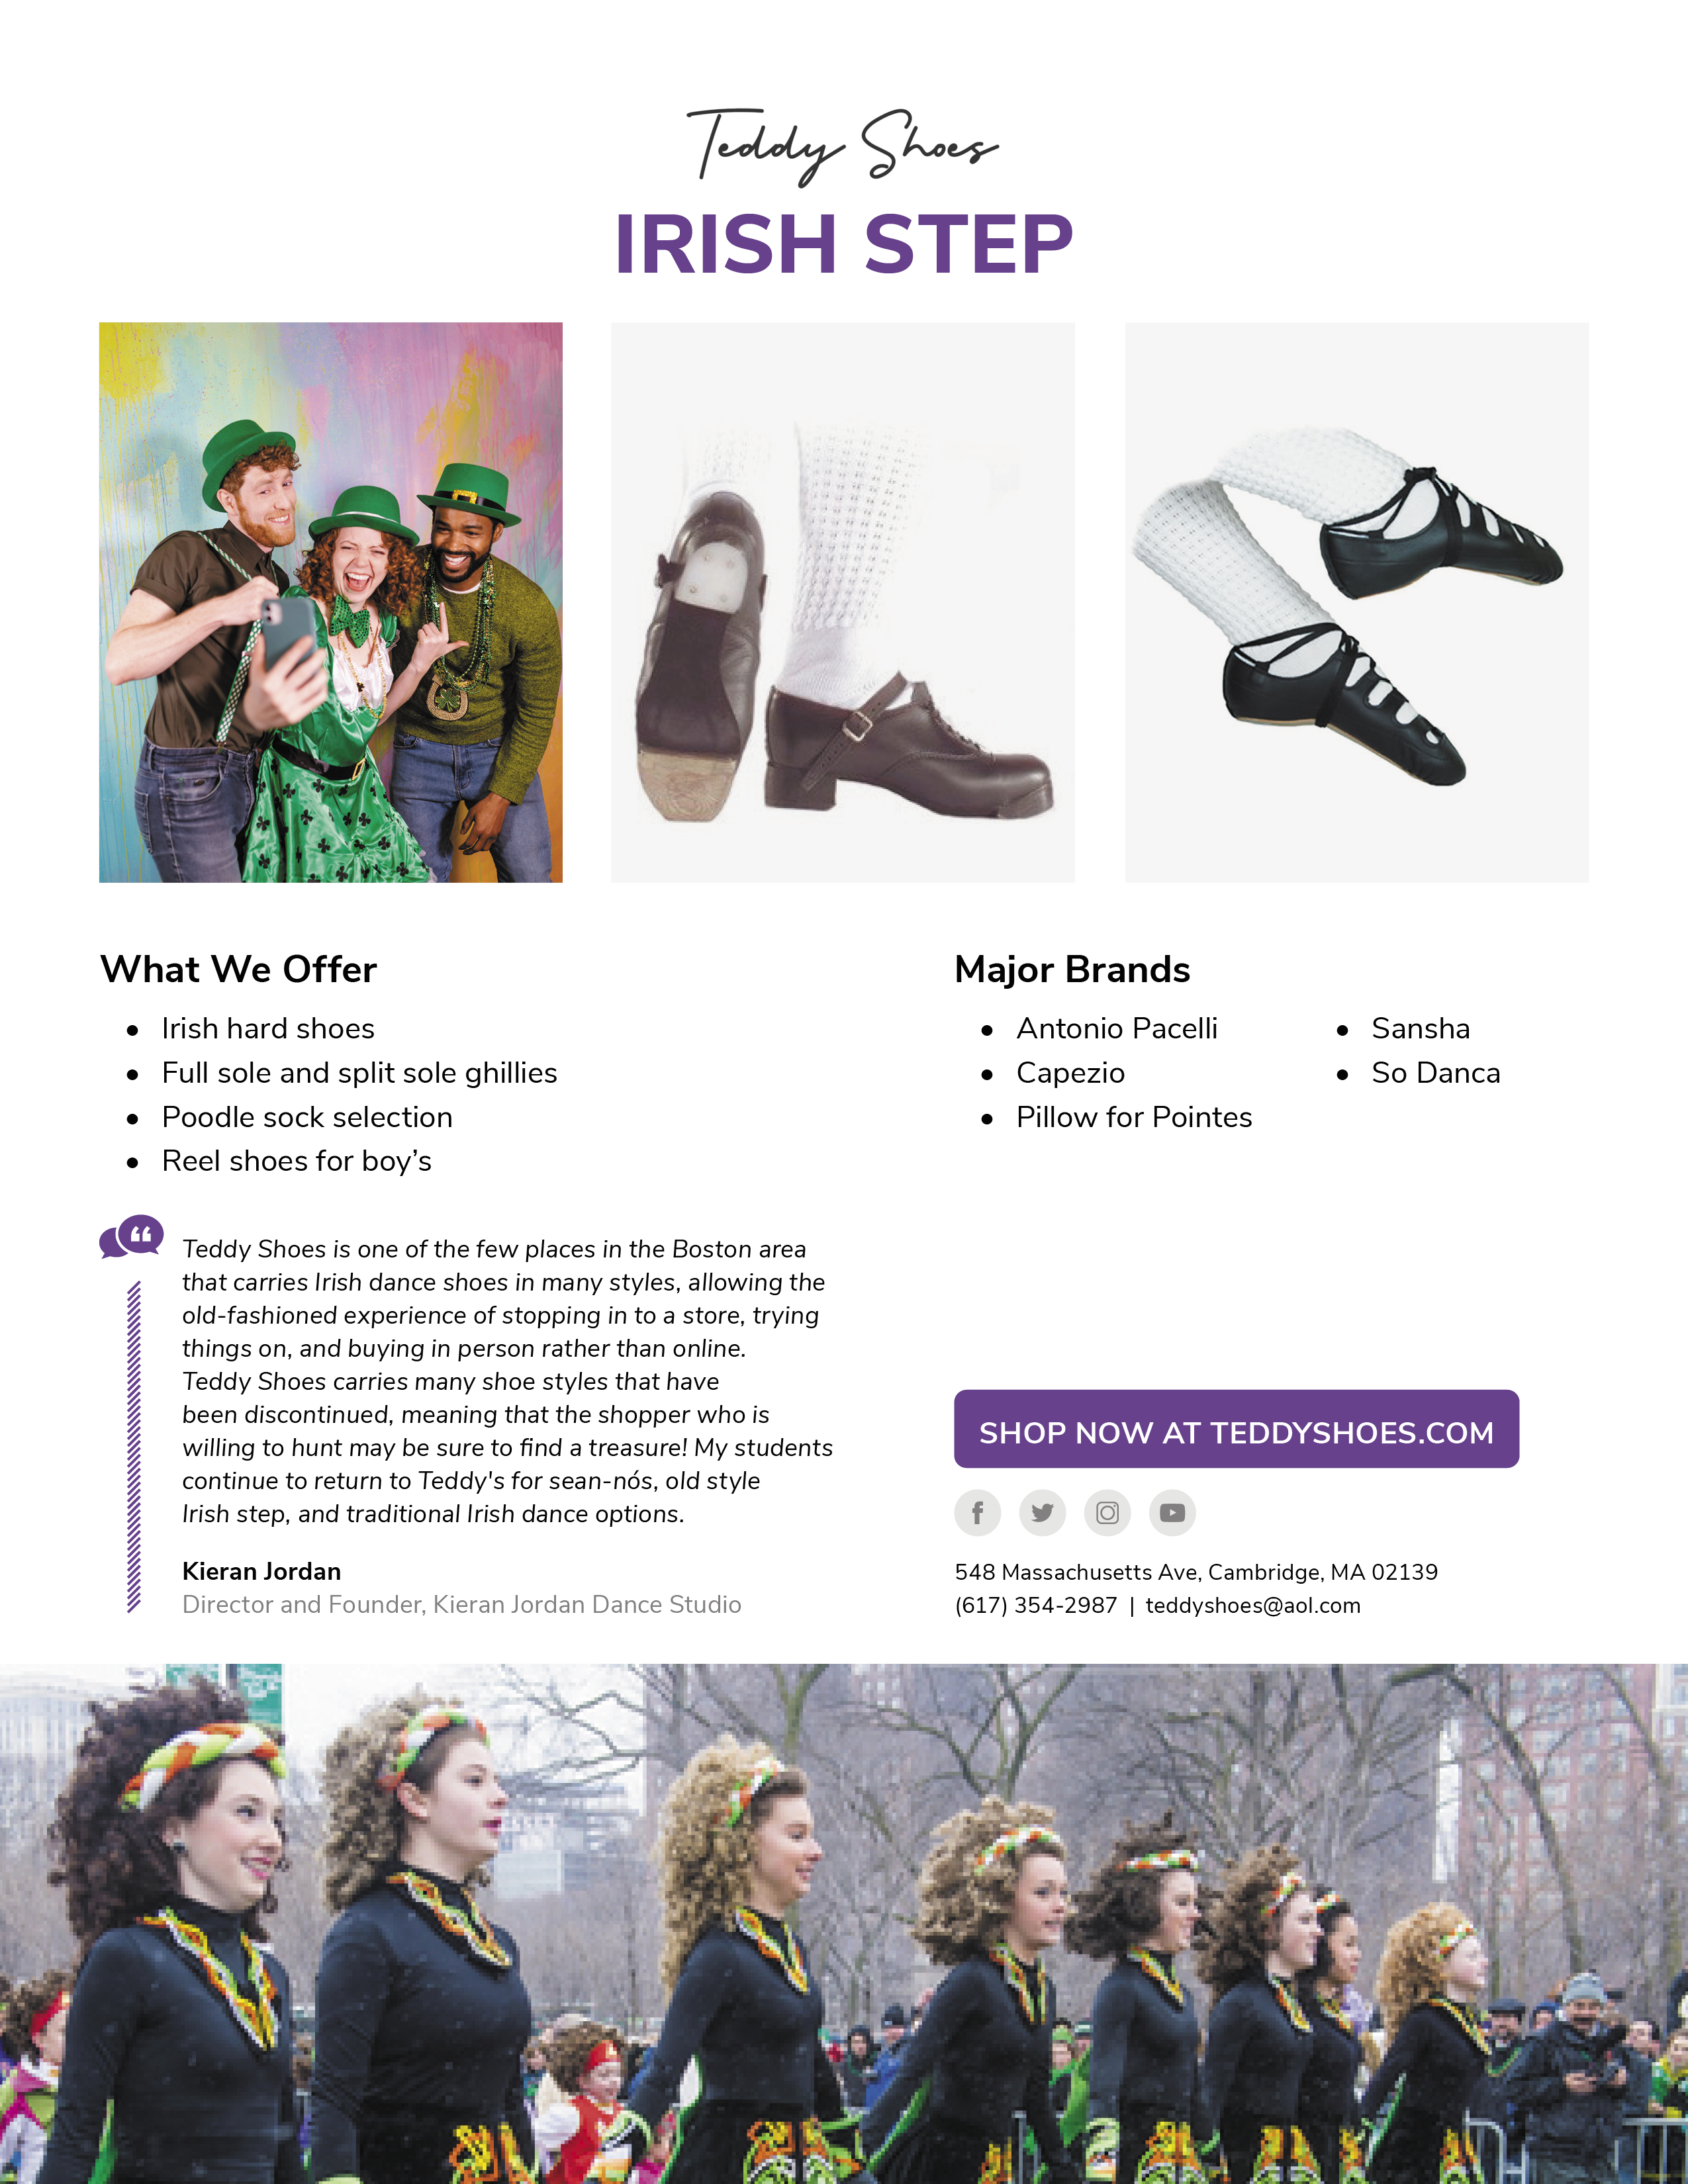 Irish Step